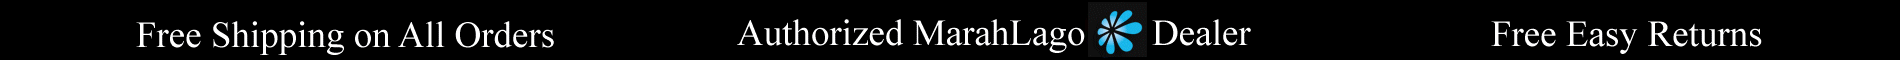 Free Shipping, Authorized MarahLago Dealer, Free Returns